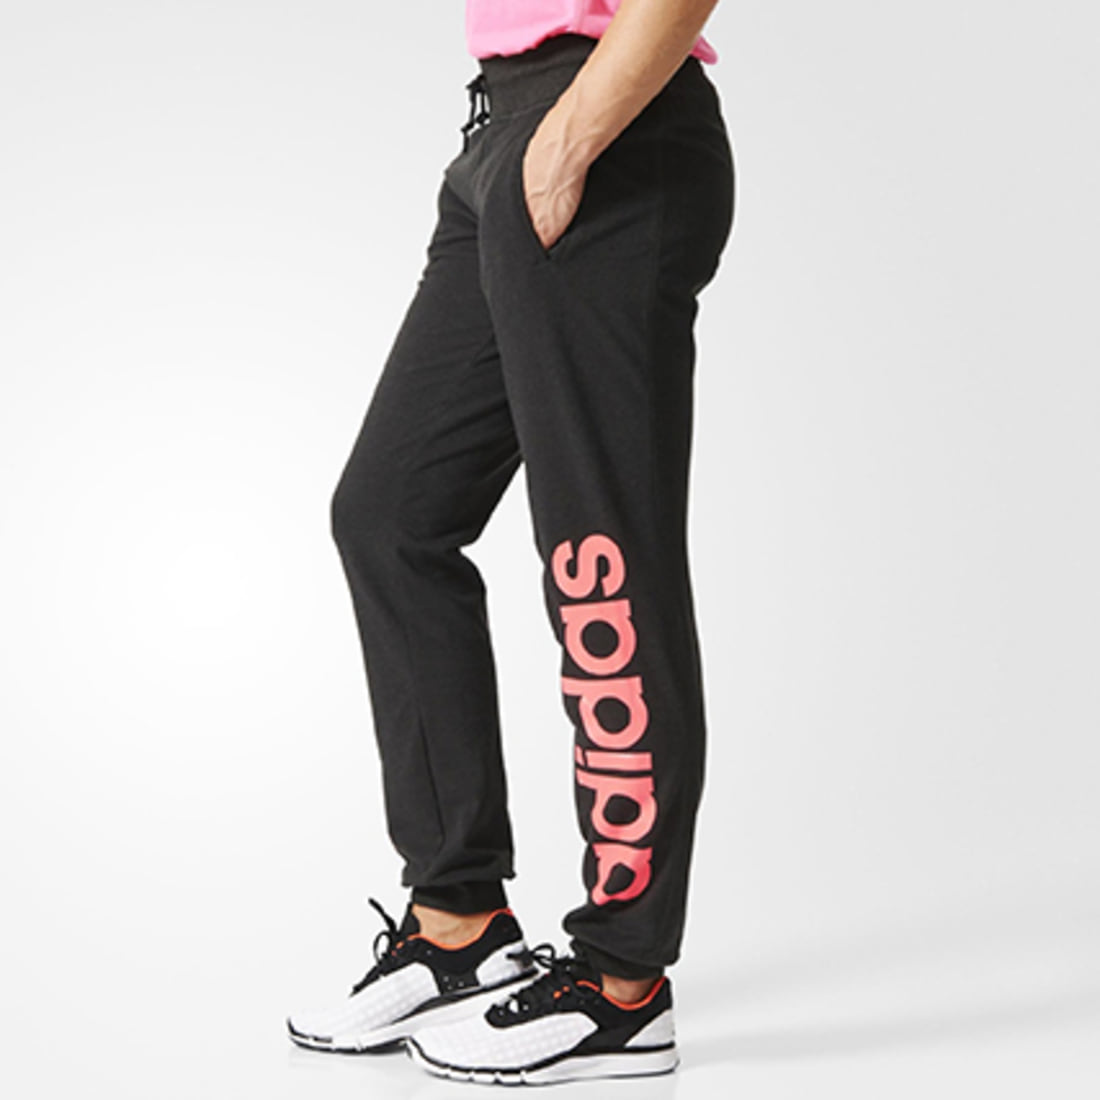 America modelo marca Adidas Originals - Pantalon Jogging Femme adidas Essential Linear Gris  Anthracite - LaBoutiqueOfficielle.com